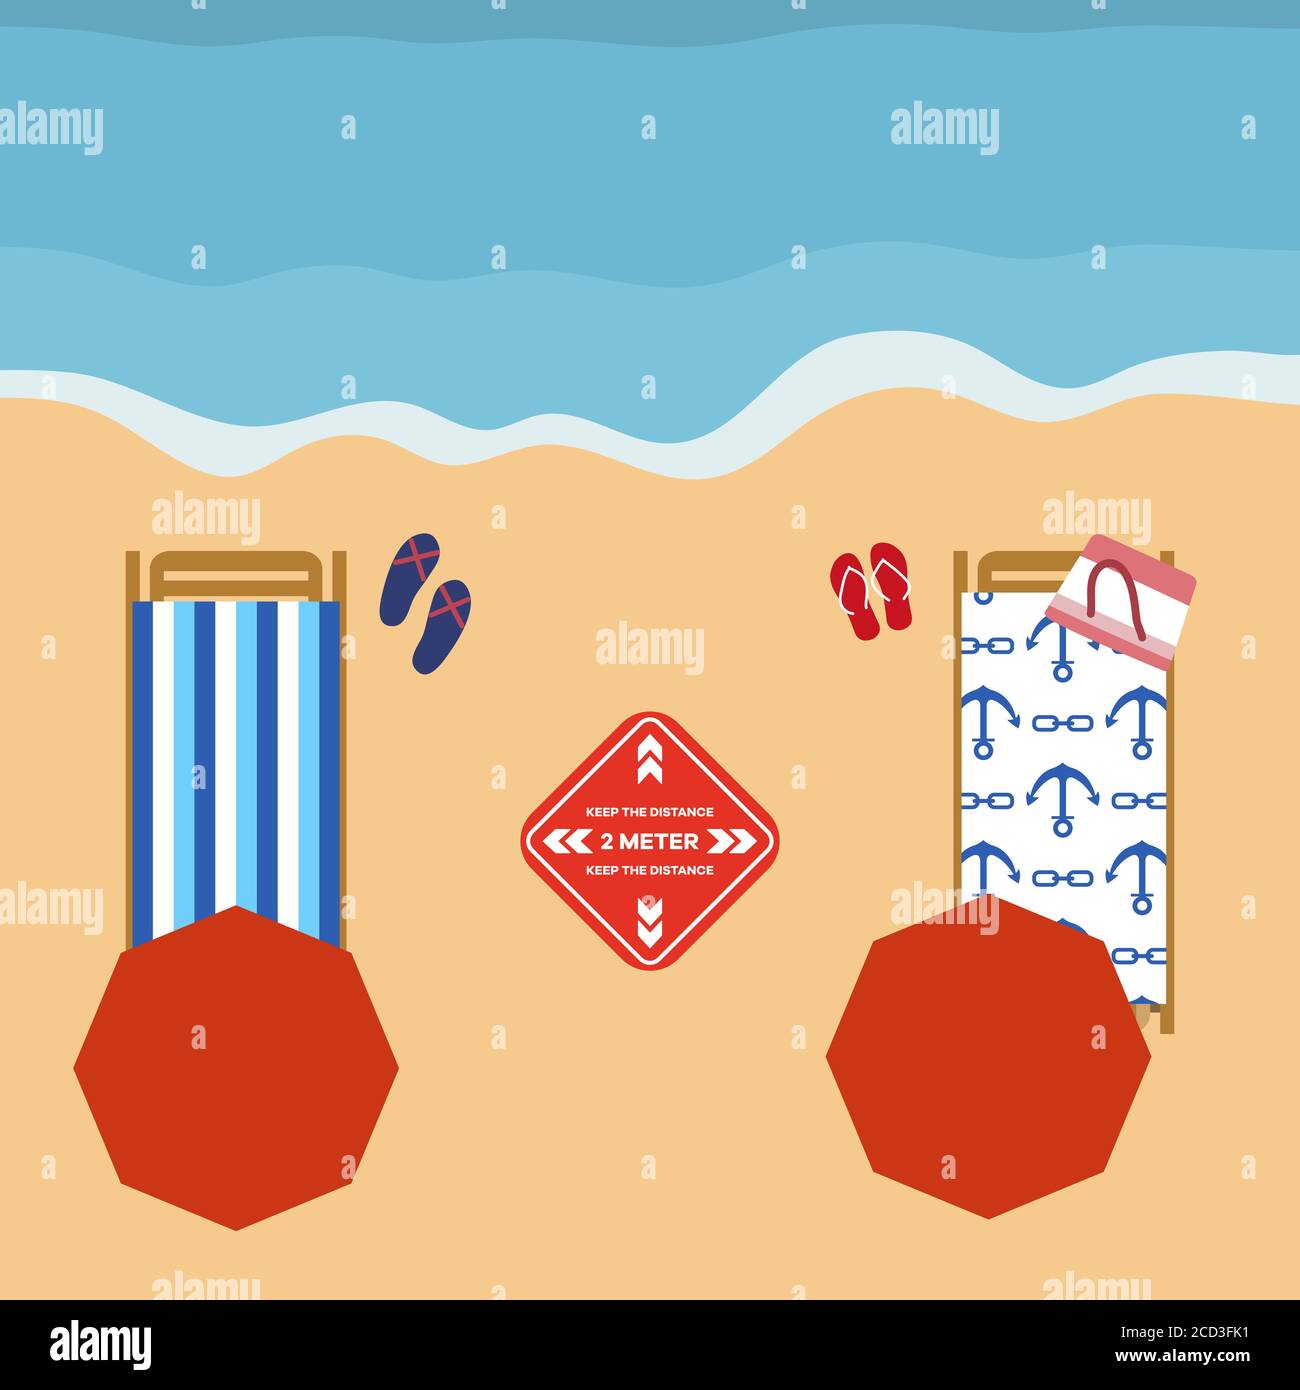 Illustrazione vettoriale che apre le spiagge dopo la quarantena COVID-19, pandemia di coronavirus. Ombrelloni, luoghi per rilassarsi a distanza Social Distancing. SUMM Illustrazione Vettoriale